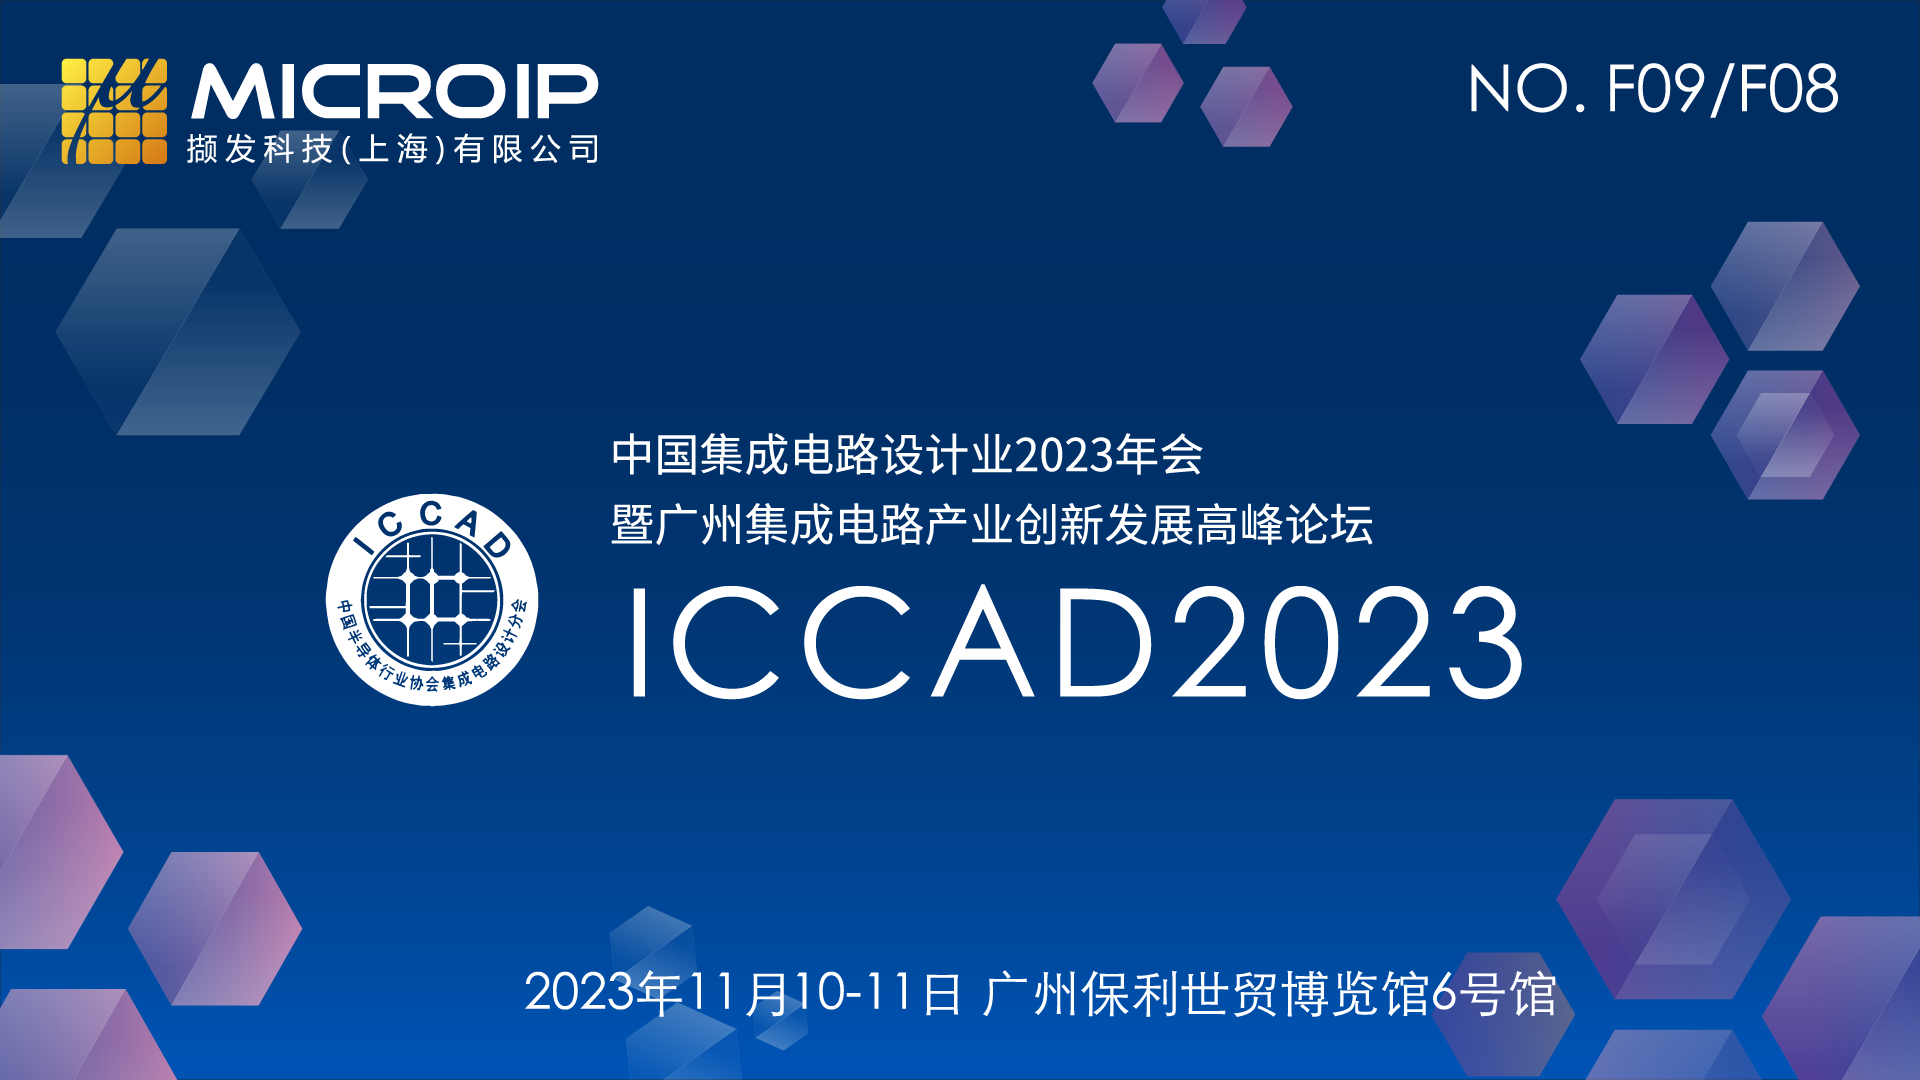 ICCAD 2023 Banner